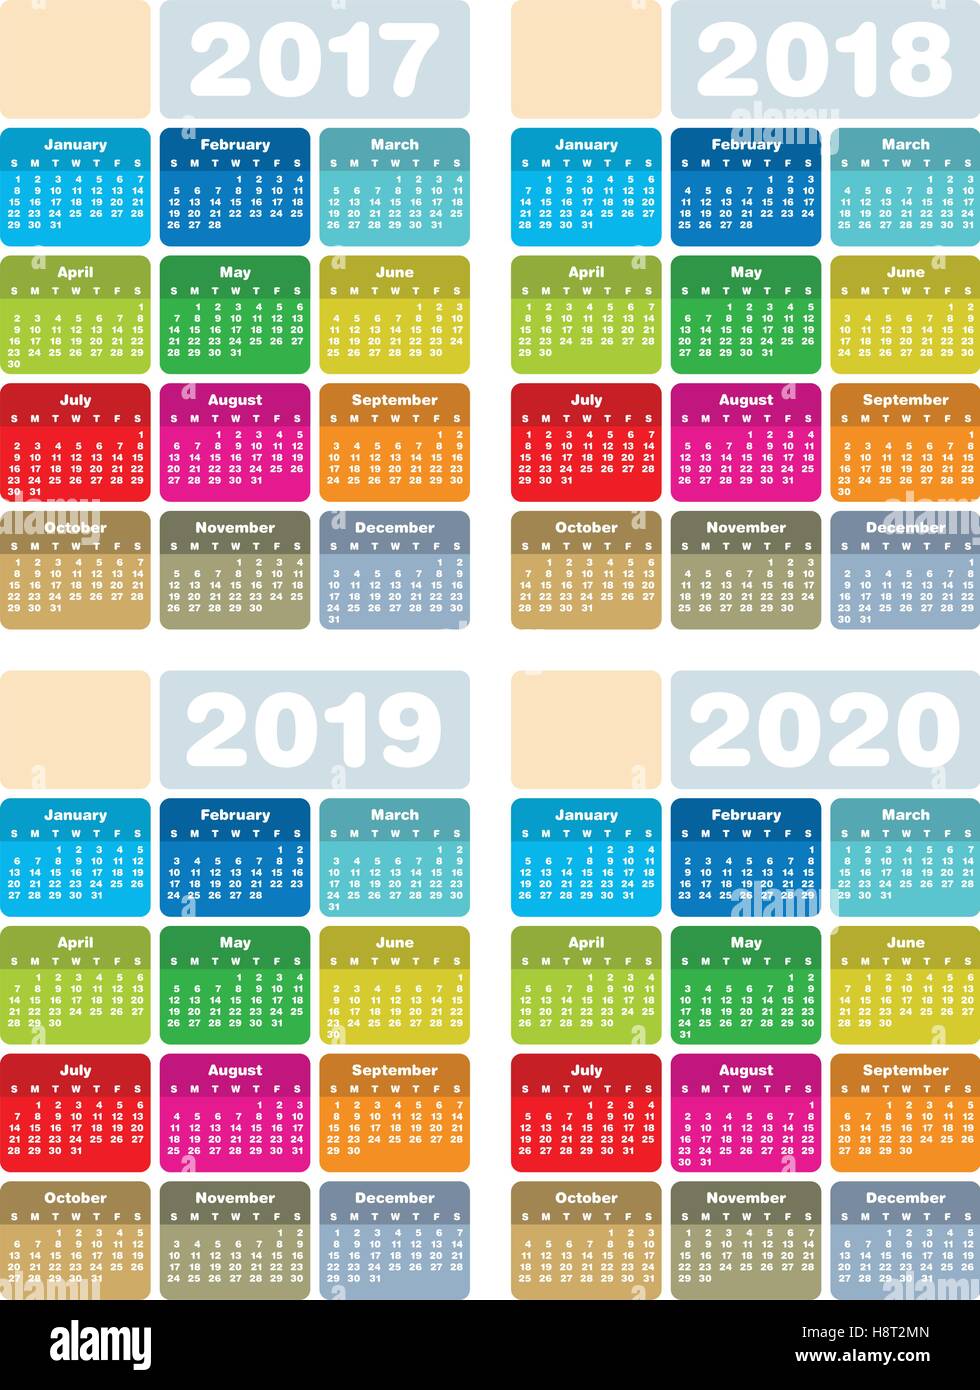 Bunten Kalender für die Jahre 2017, 2018, 2019 und 2020 im Vektor-Format. Stock Vektor